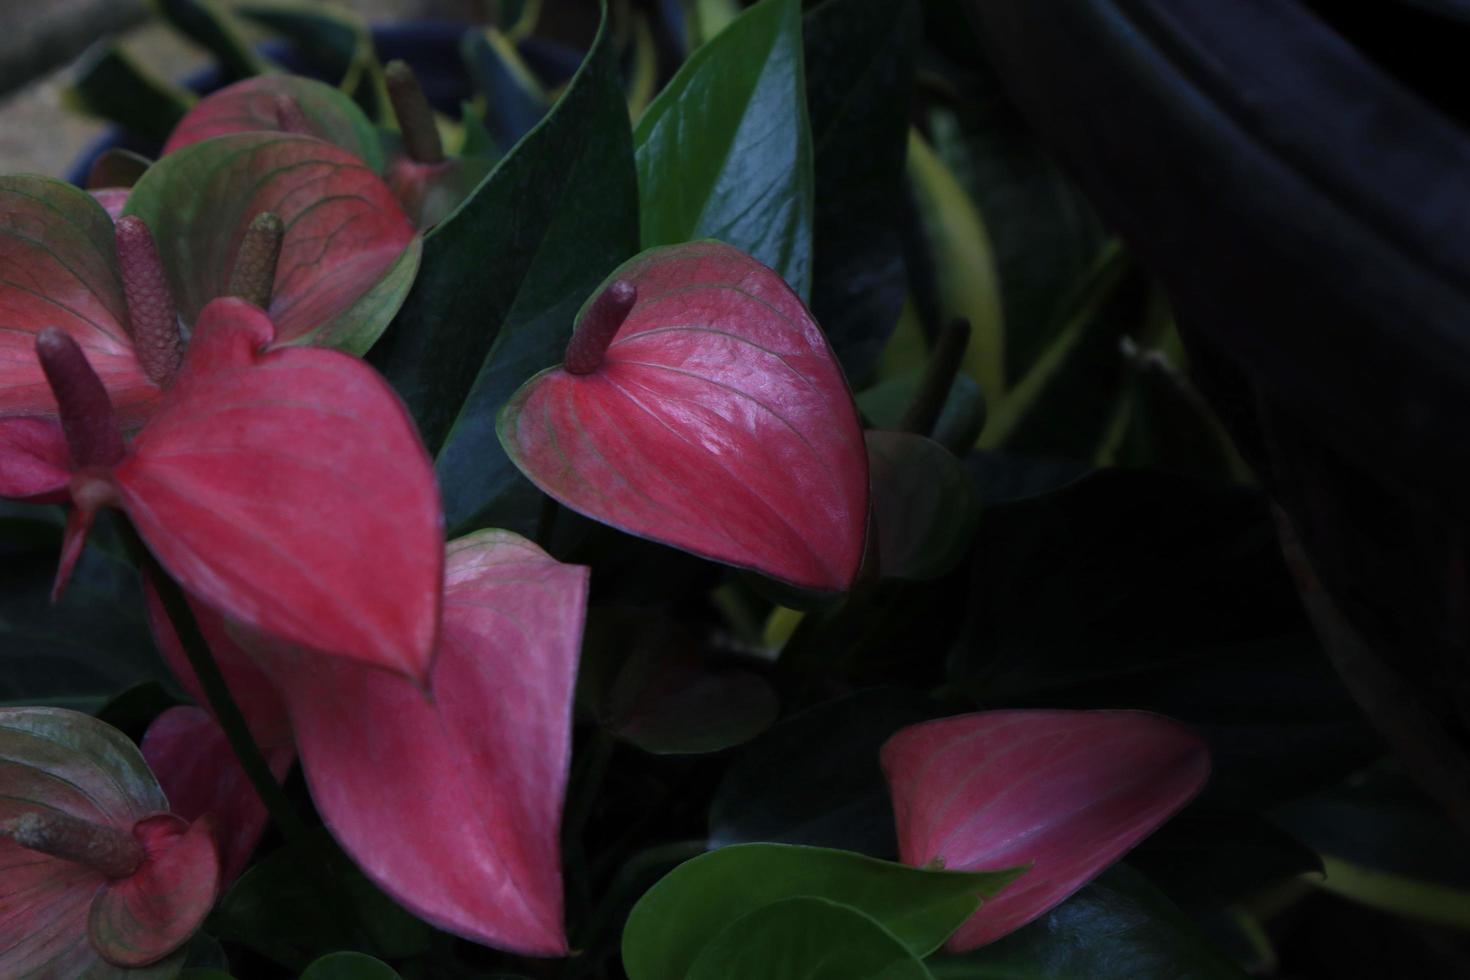 flor de flamenco o ramo de flores de anturio de coleta. cierre la exótica flor rosa-púrpura sobre hojas verdes en una maceta en el jardín con luz matutina. foto